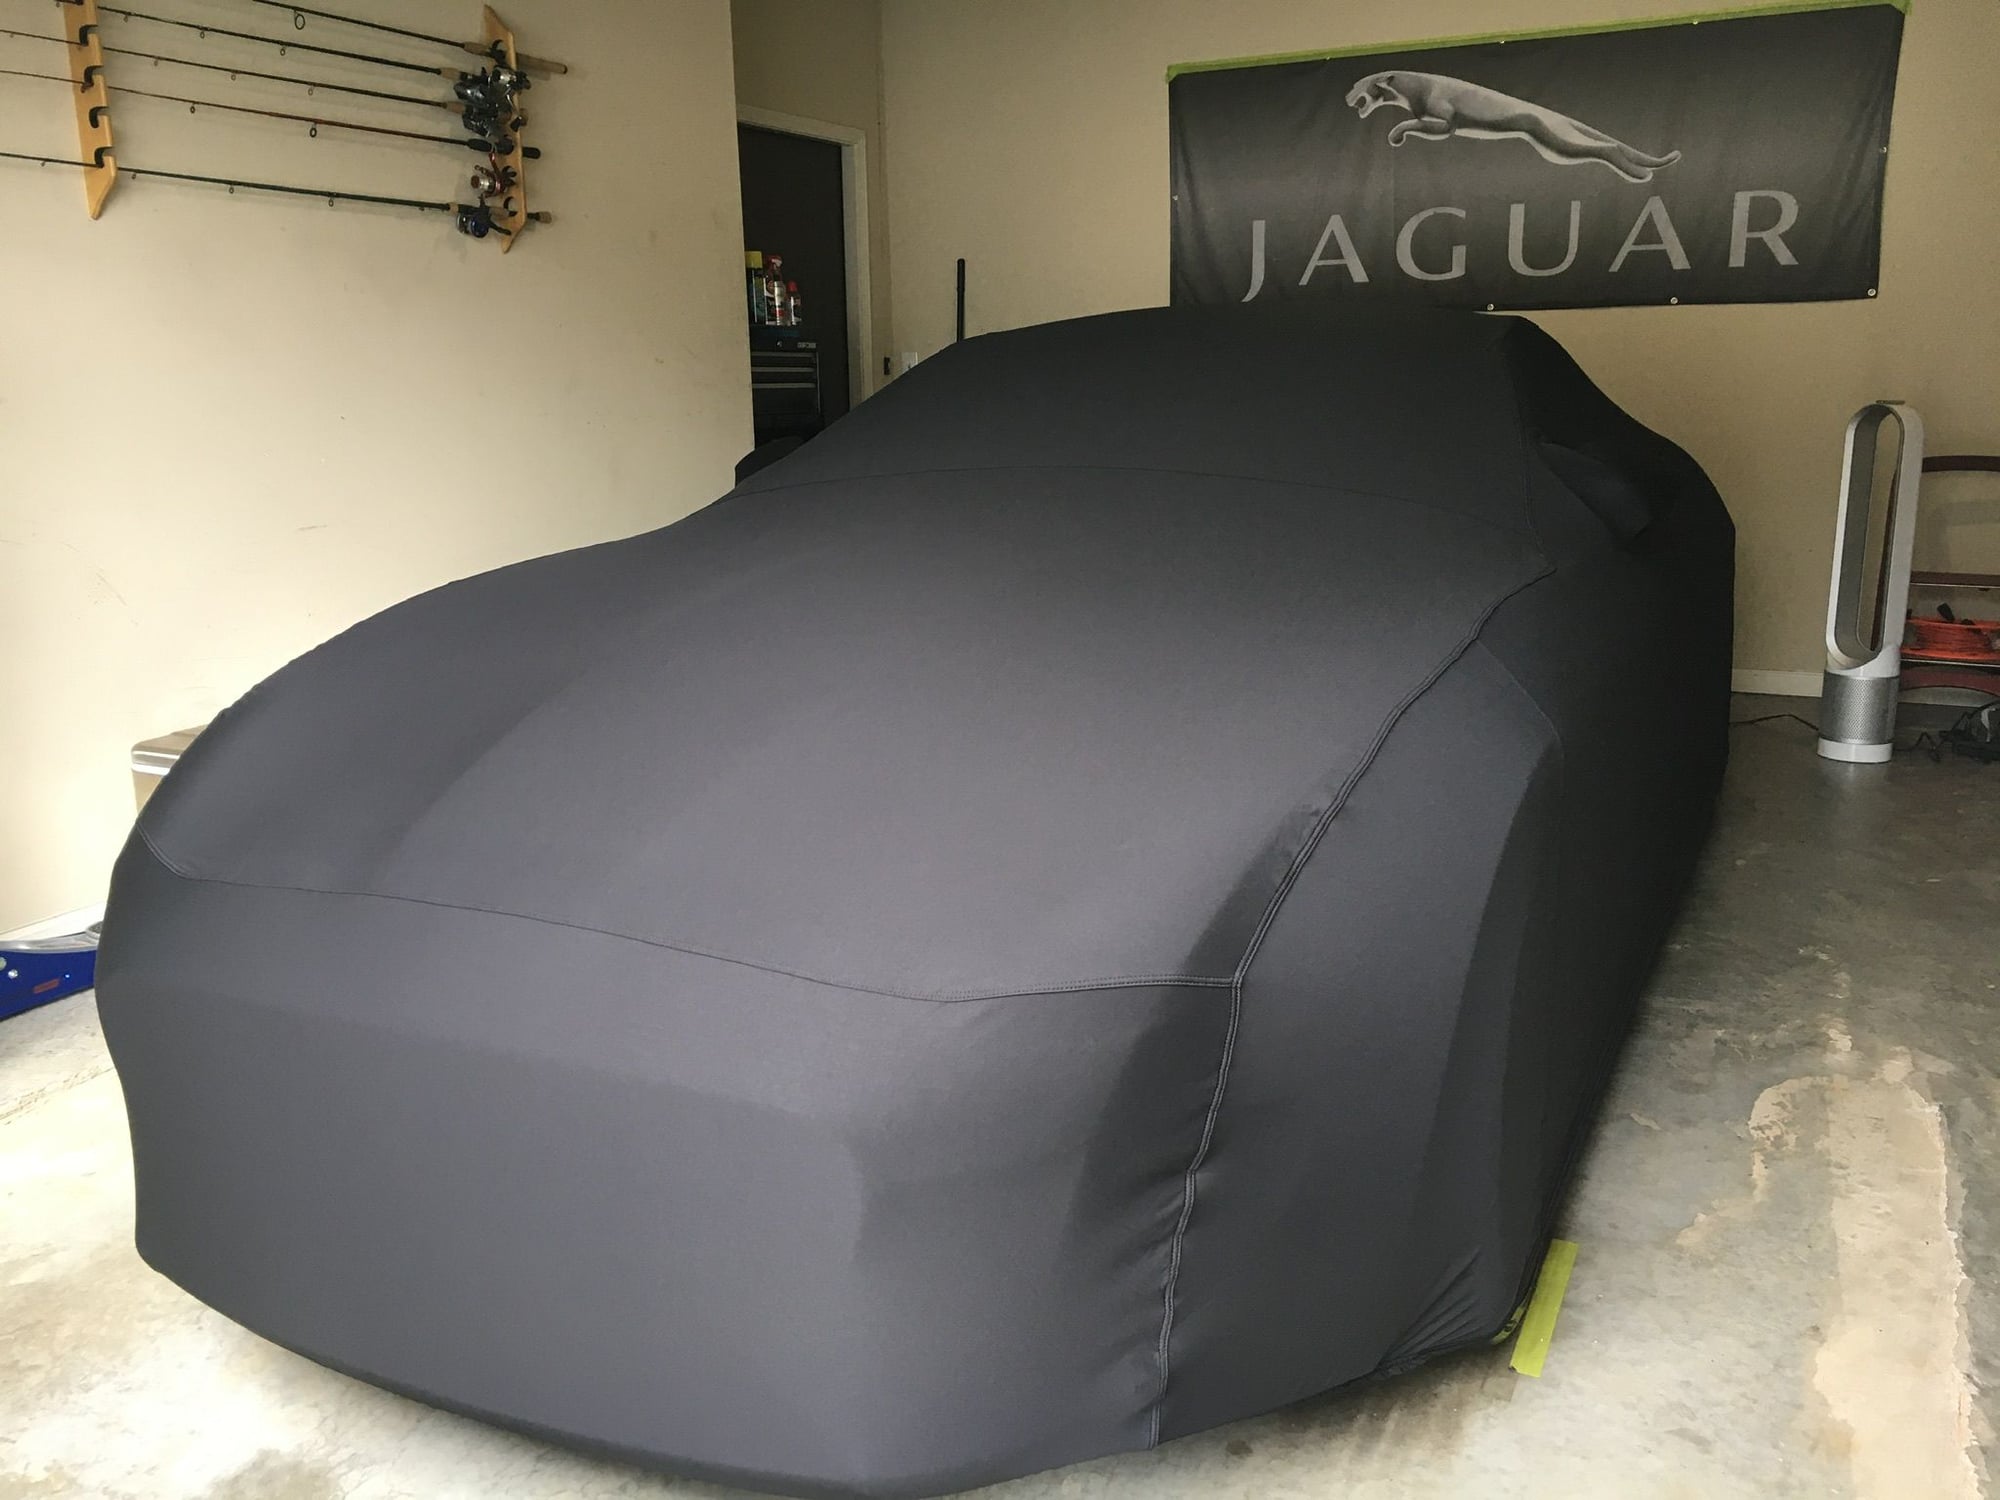 Car cover - Jaguar Forums - Jaguar Enthusiasts Forum